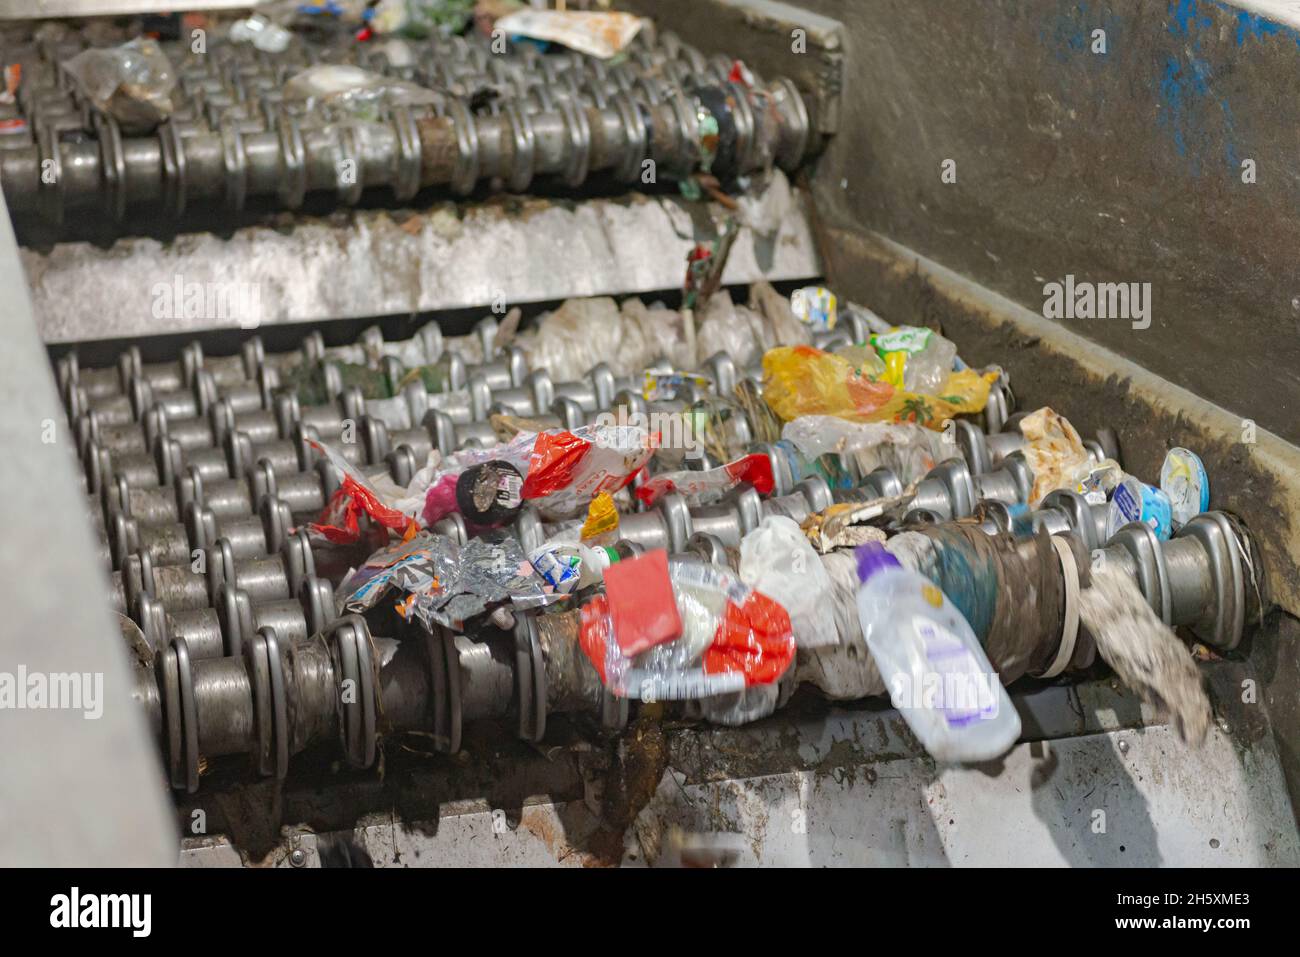 Mosca. Russia. Autunno 2020. Un nastro con un frantumatore in una fabbrica di rifiuti. Impianto di smistamento rifiuti, uno dei dispositivi. Foto Stock